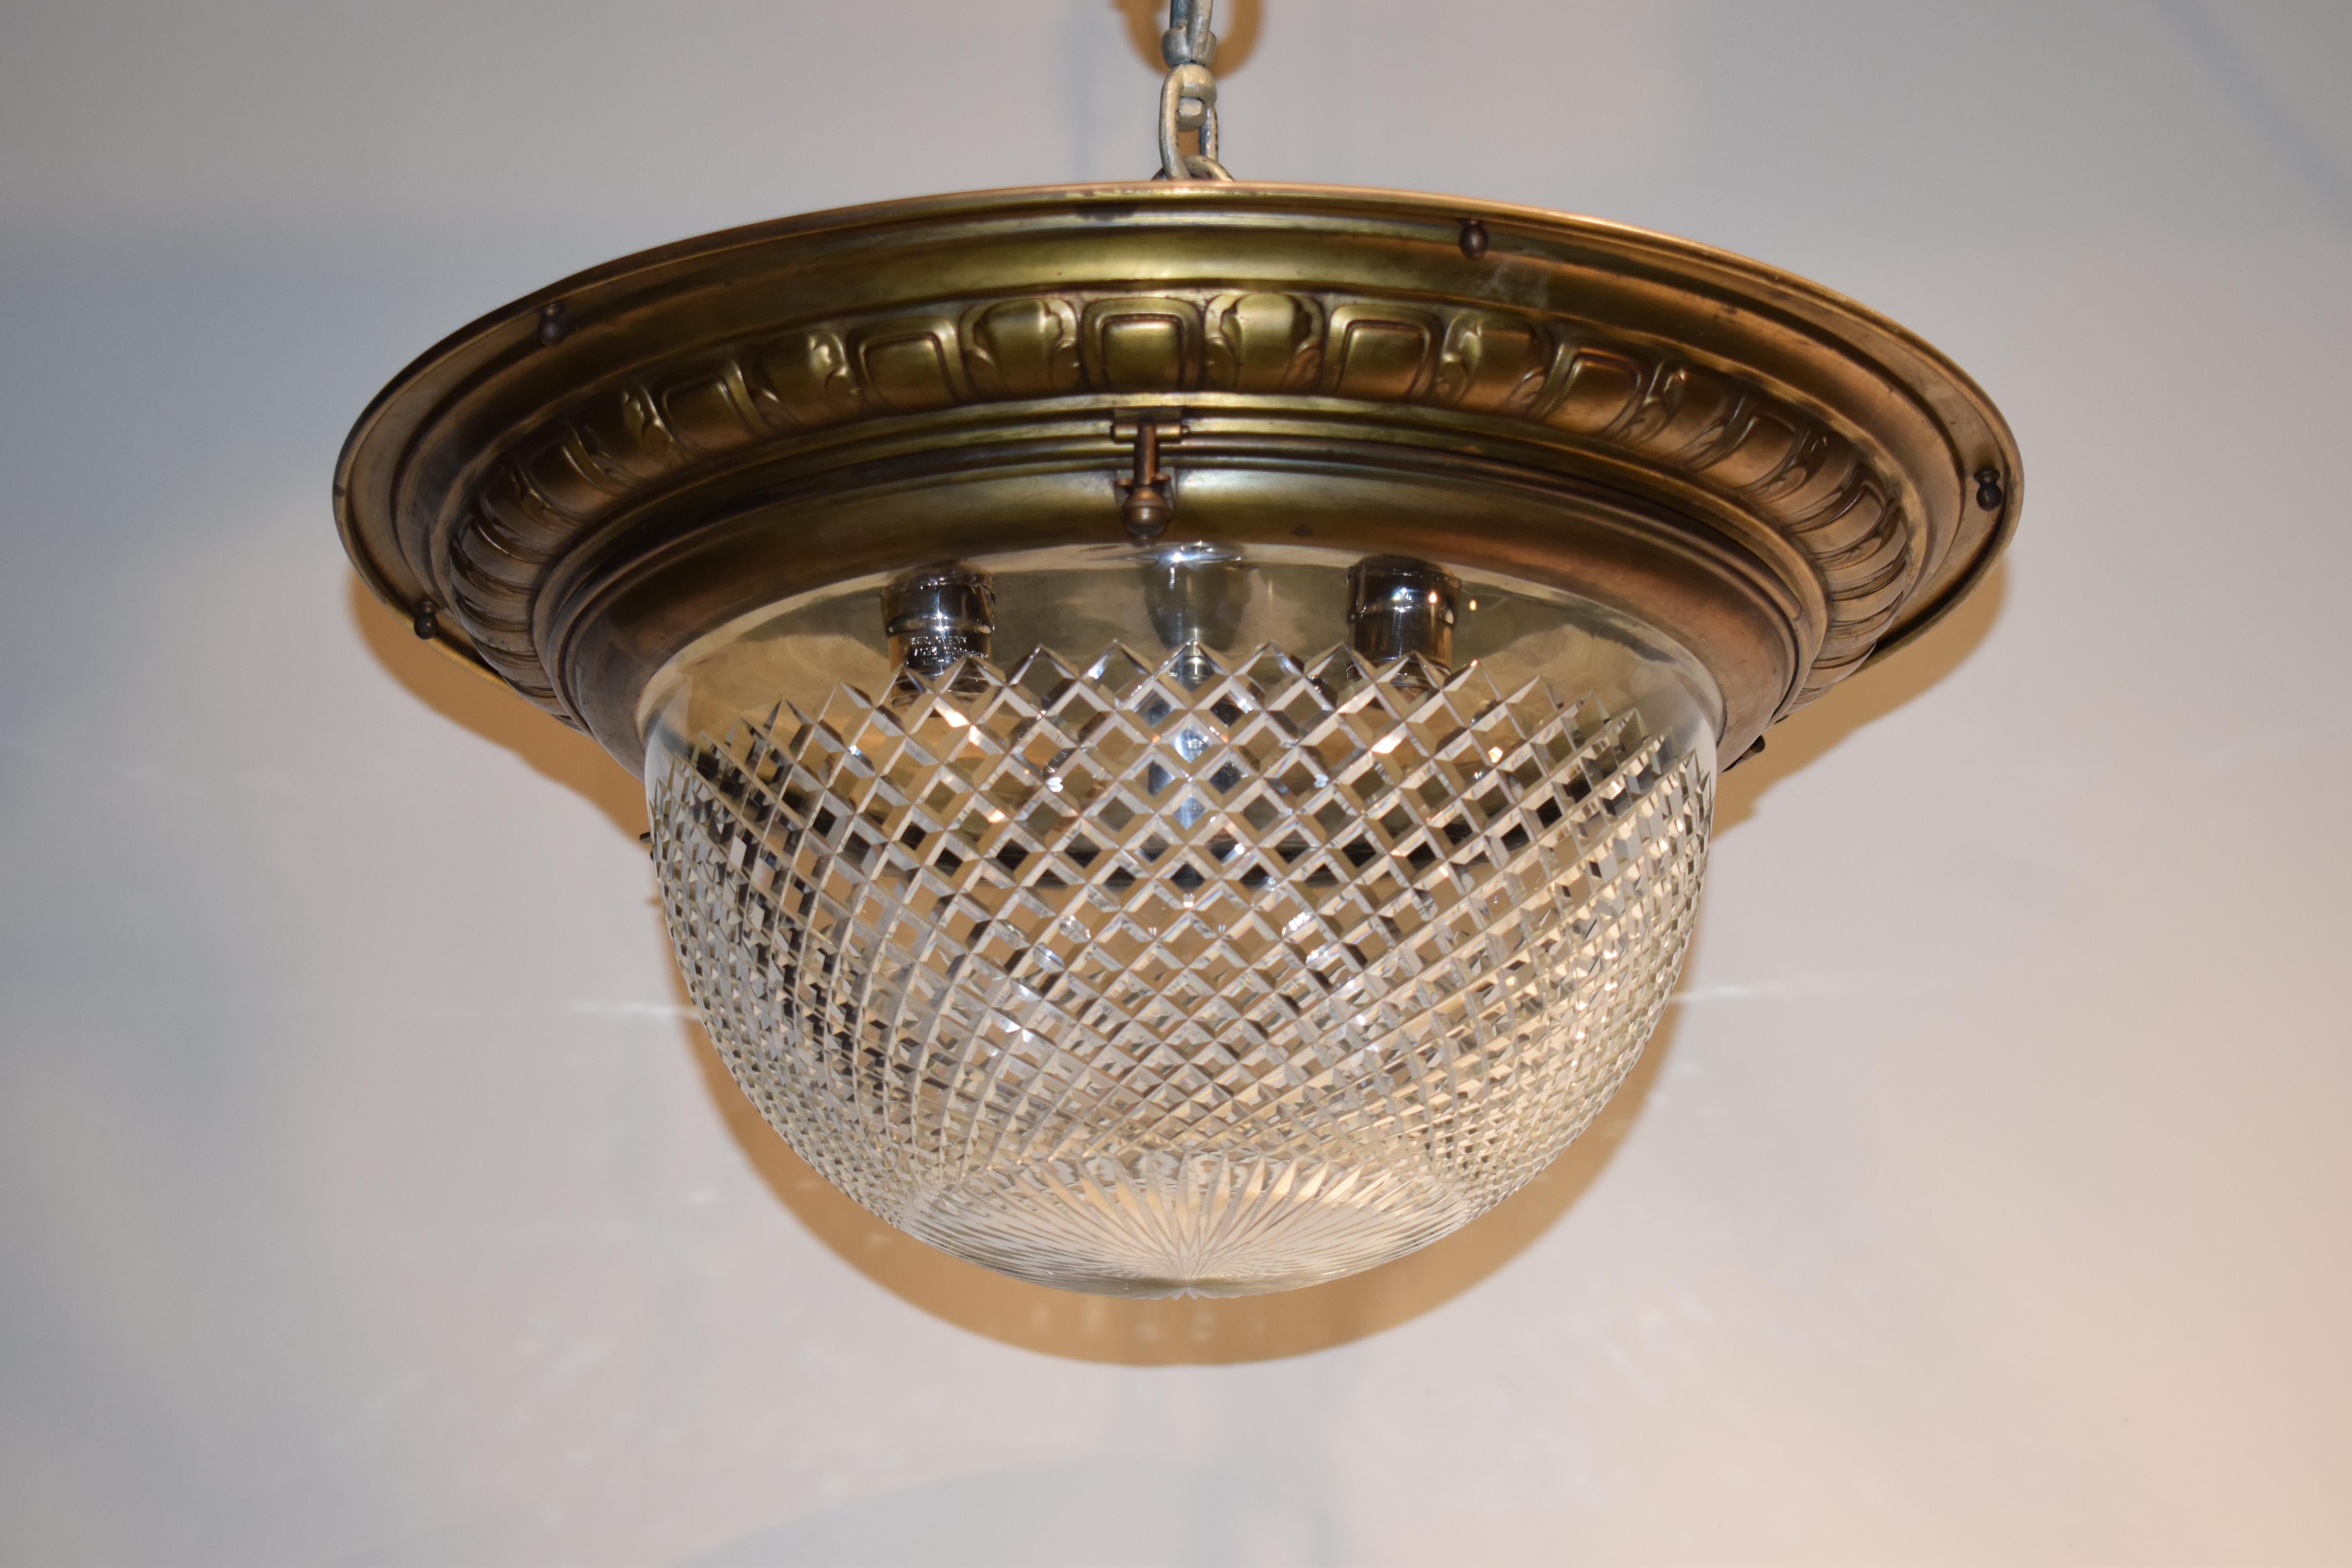 Un très beau plafonnier en bronze doré. La couronne soutient un dôme en cristal taillé à la main par Baccarat. France, vers 1900. 3 lumières.
Mesures : Hauteur 11